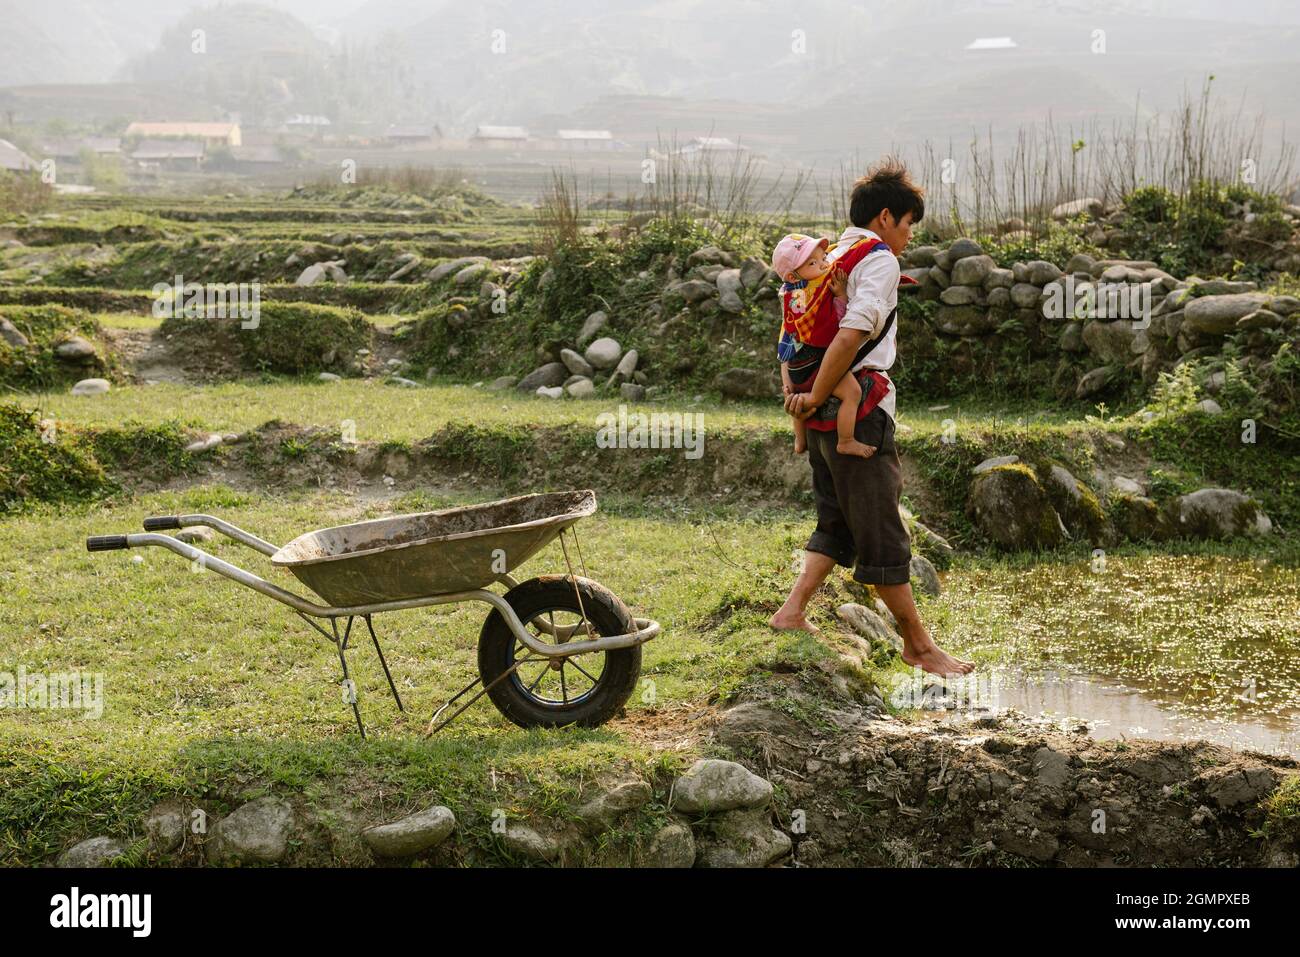 Sapa, Vietnam - 14. April 2016: Vietnamesischer Vater mit Kind, das auf dem Feld arbeitet, während seine Frau arbeitet. Vaterschaft in Asien, ländliche arme Gegend Stockfoto